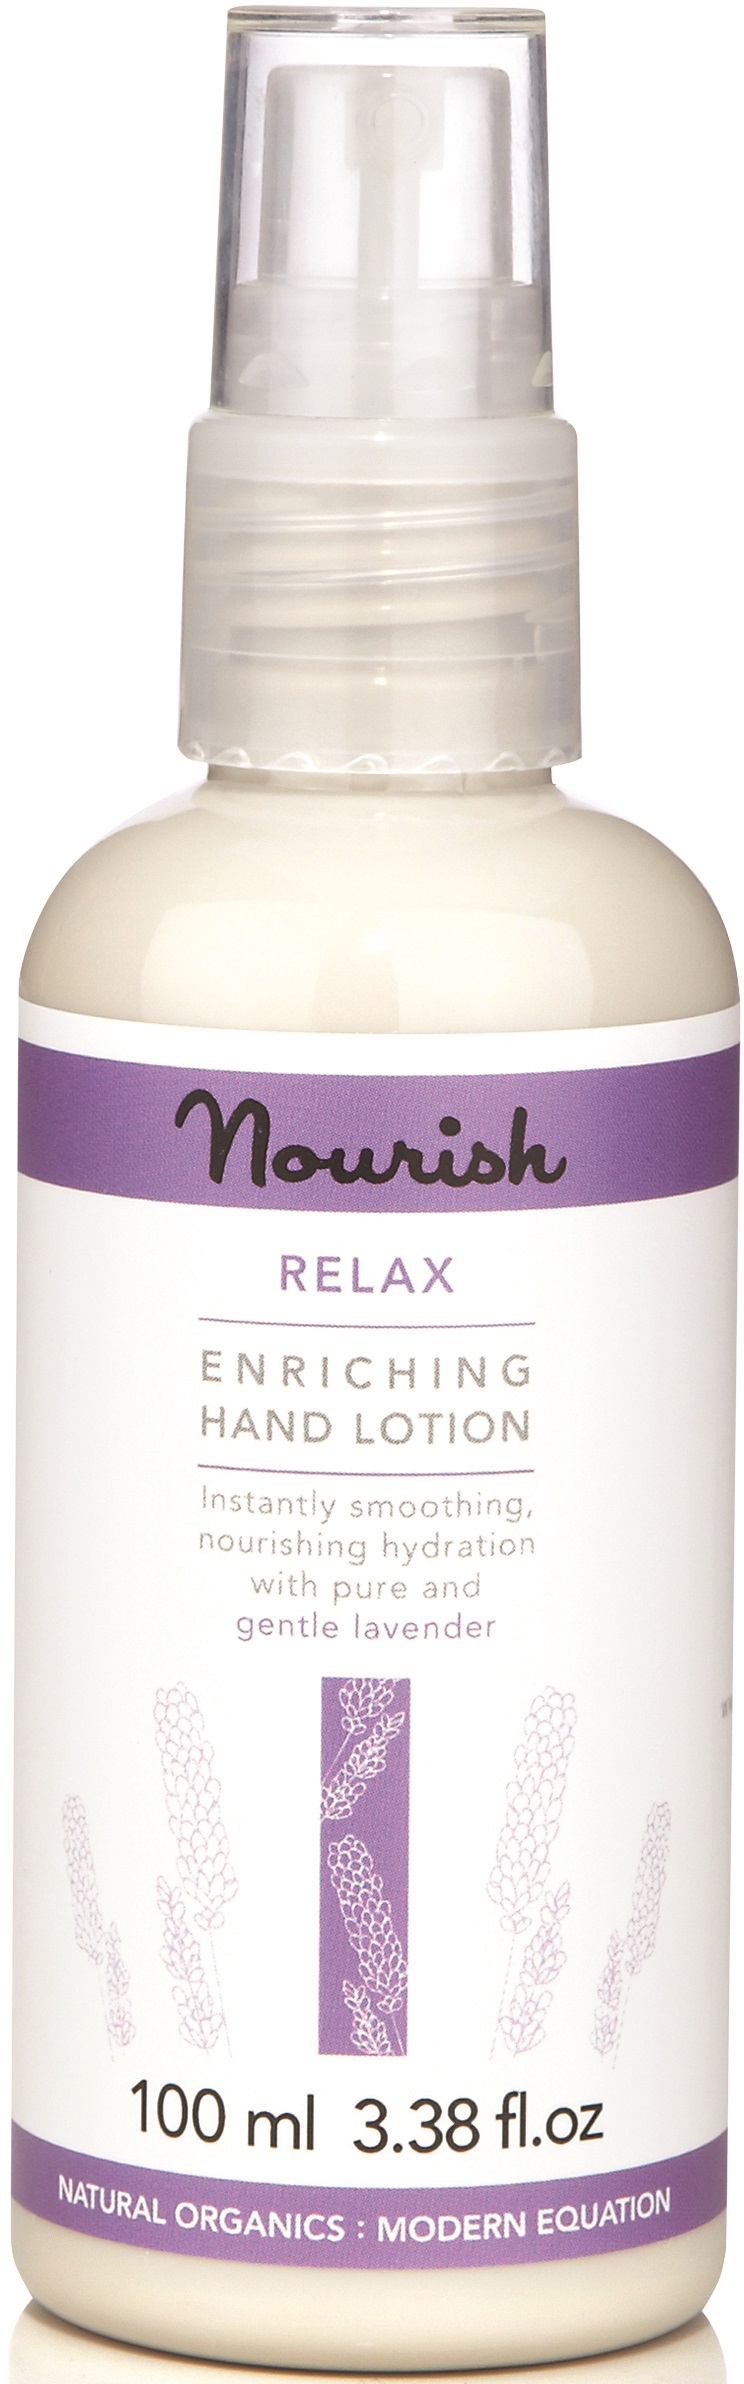 Nourish Skin Range Relax Hand Lotion